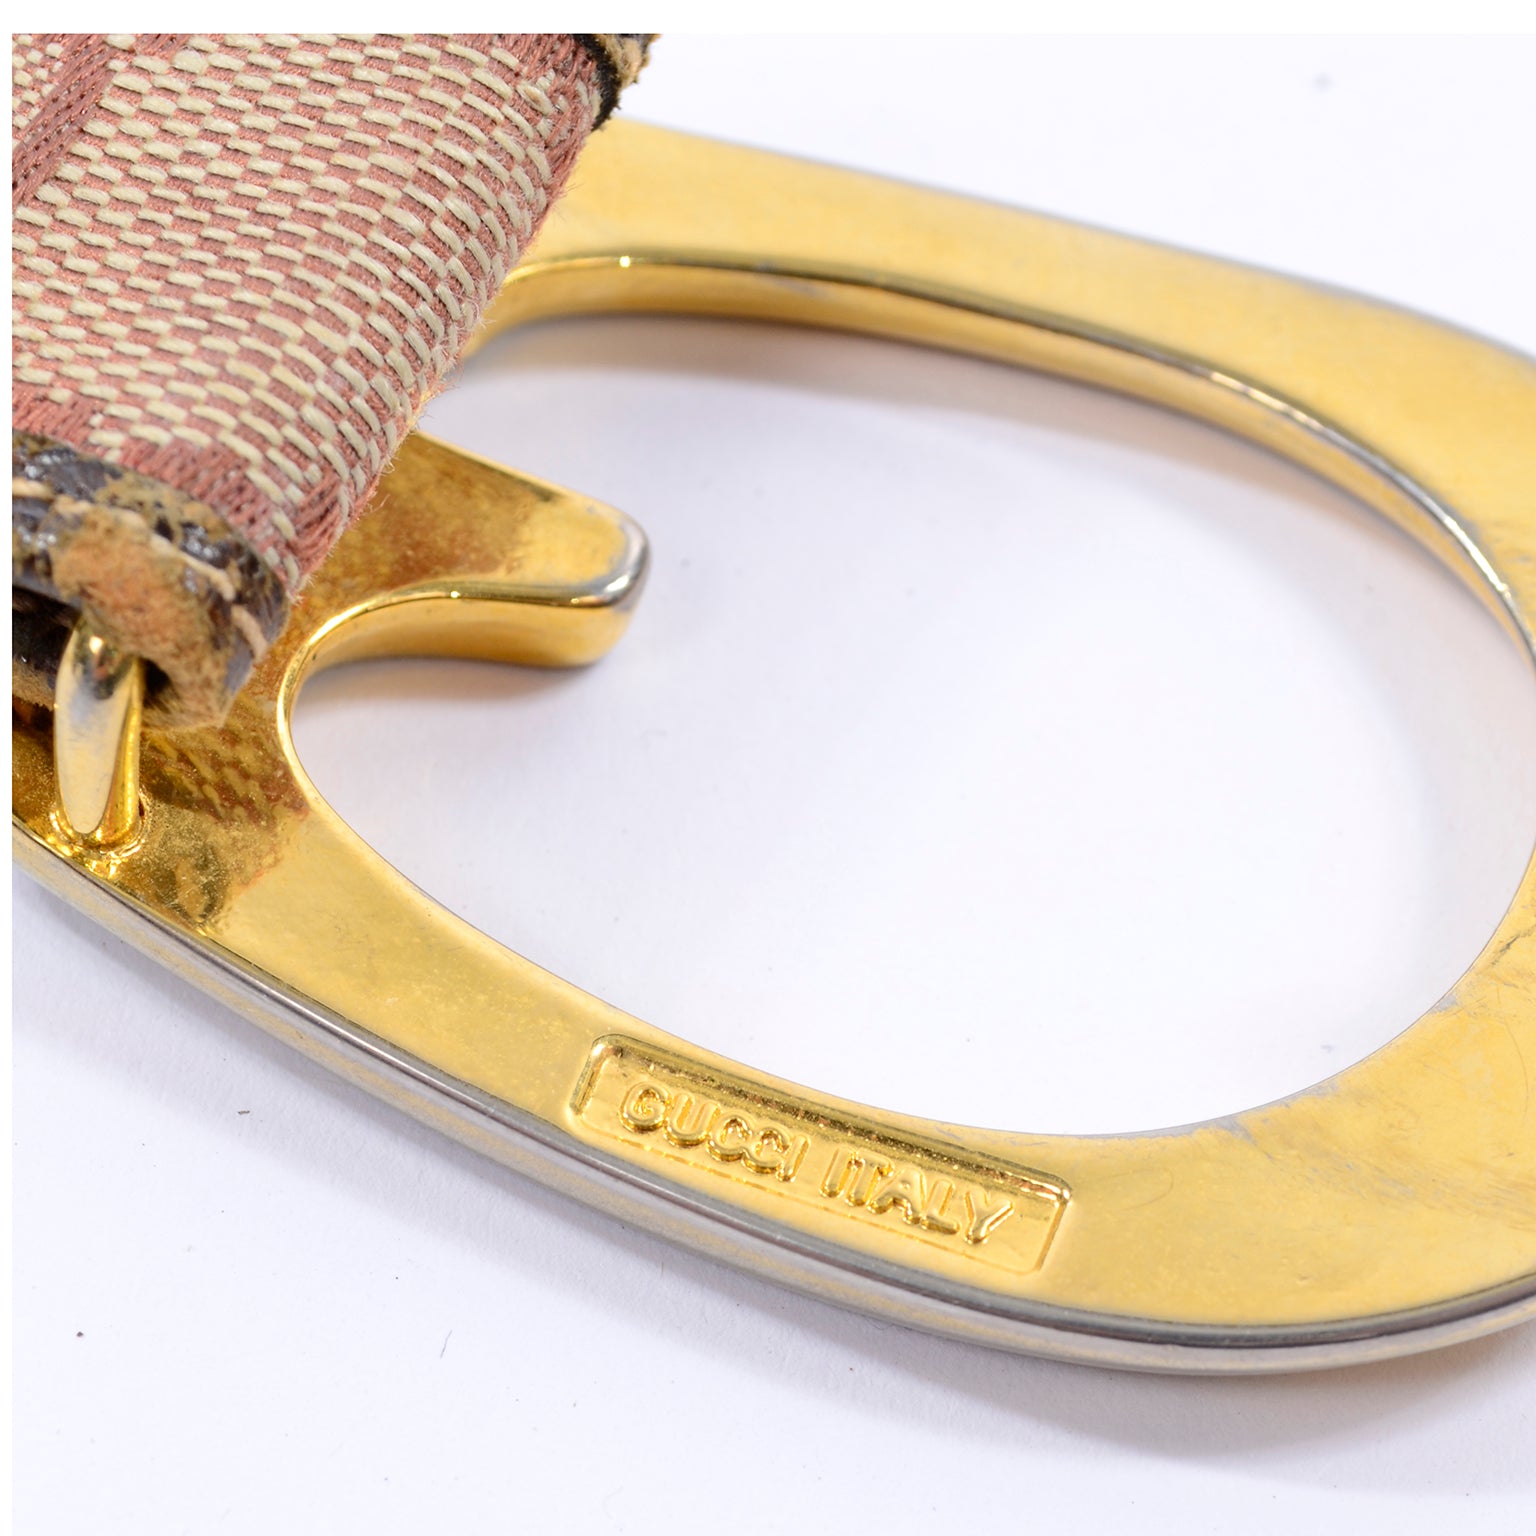 Vintage Large Monogram Gucci Belt Buckle - Ruby Lane